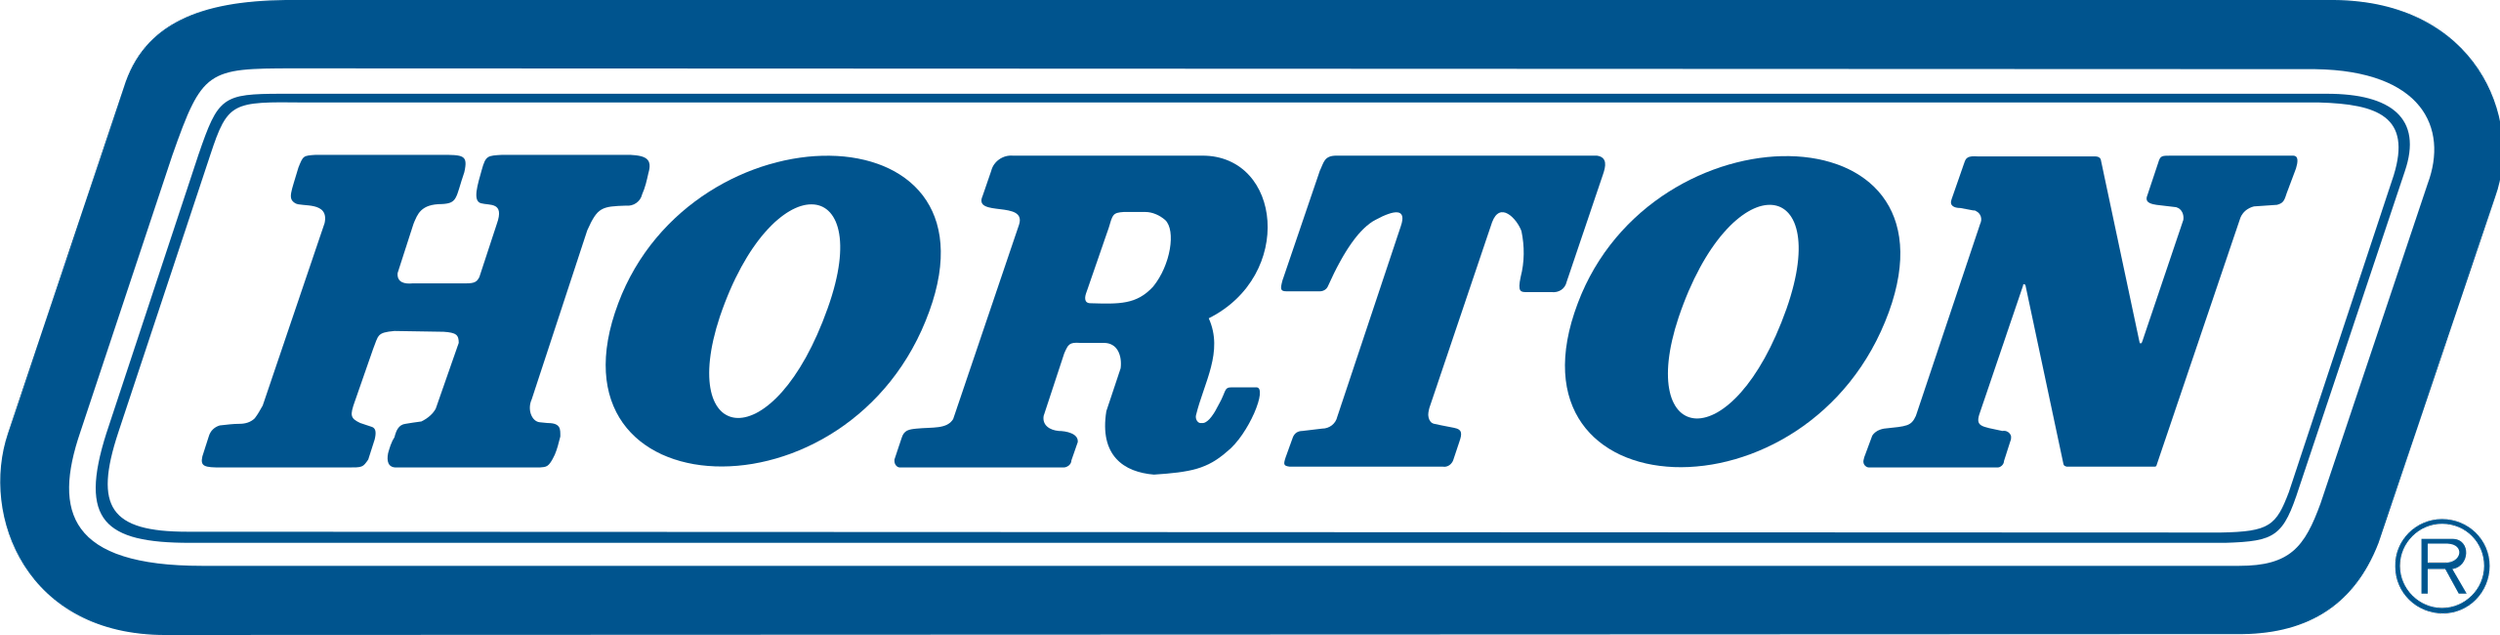 Horton-logo.svg.png